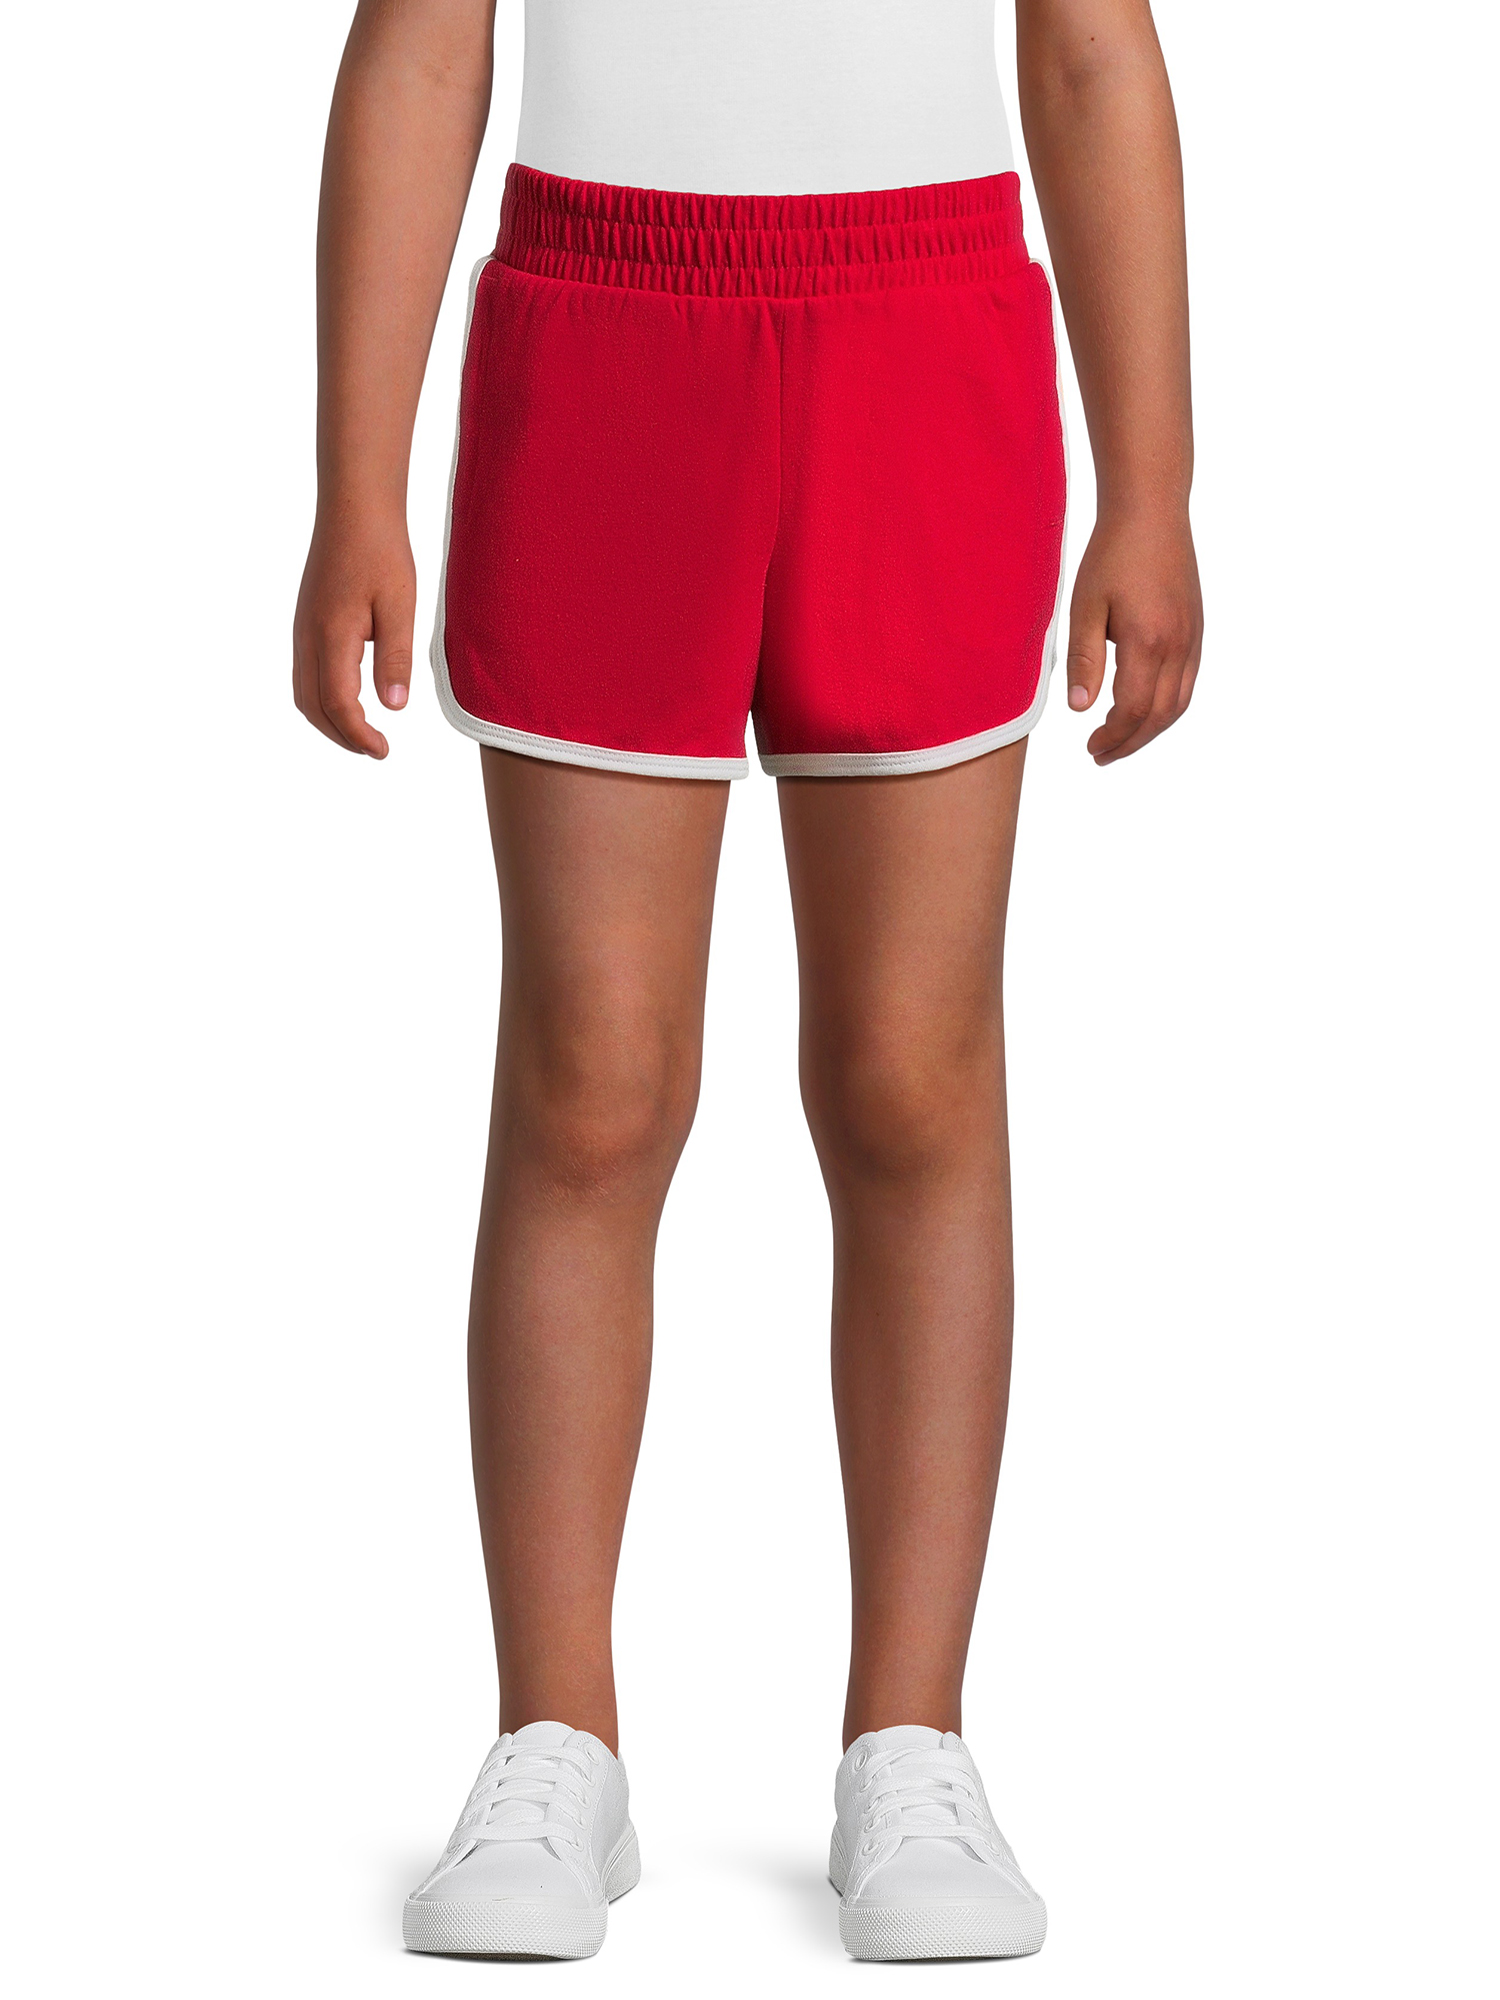 Wonder Nation Girls Dolphin Shorts, Sizes XS-XL & Plus - image 1 of 5